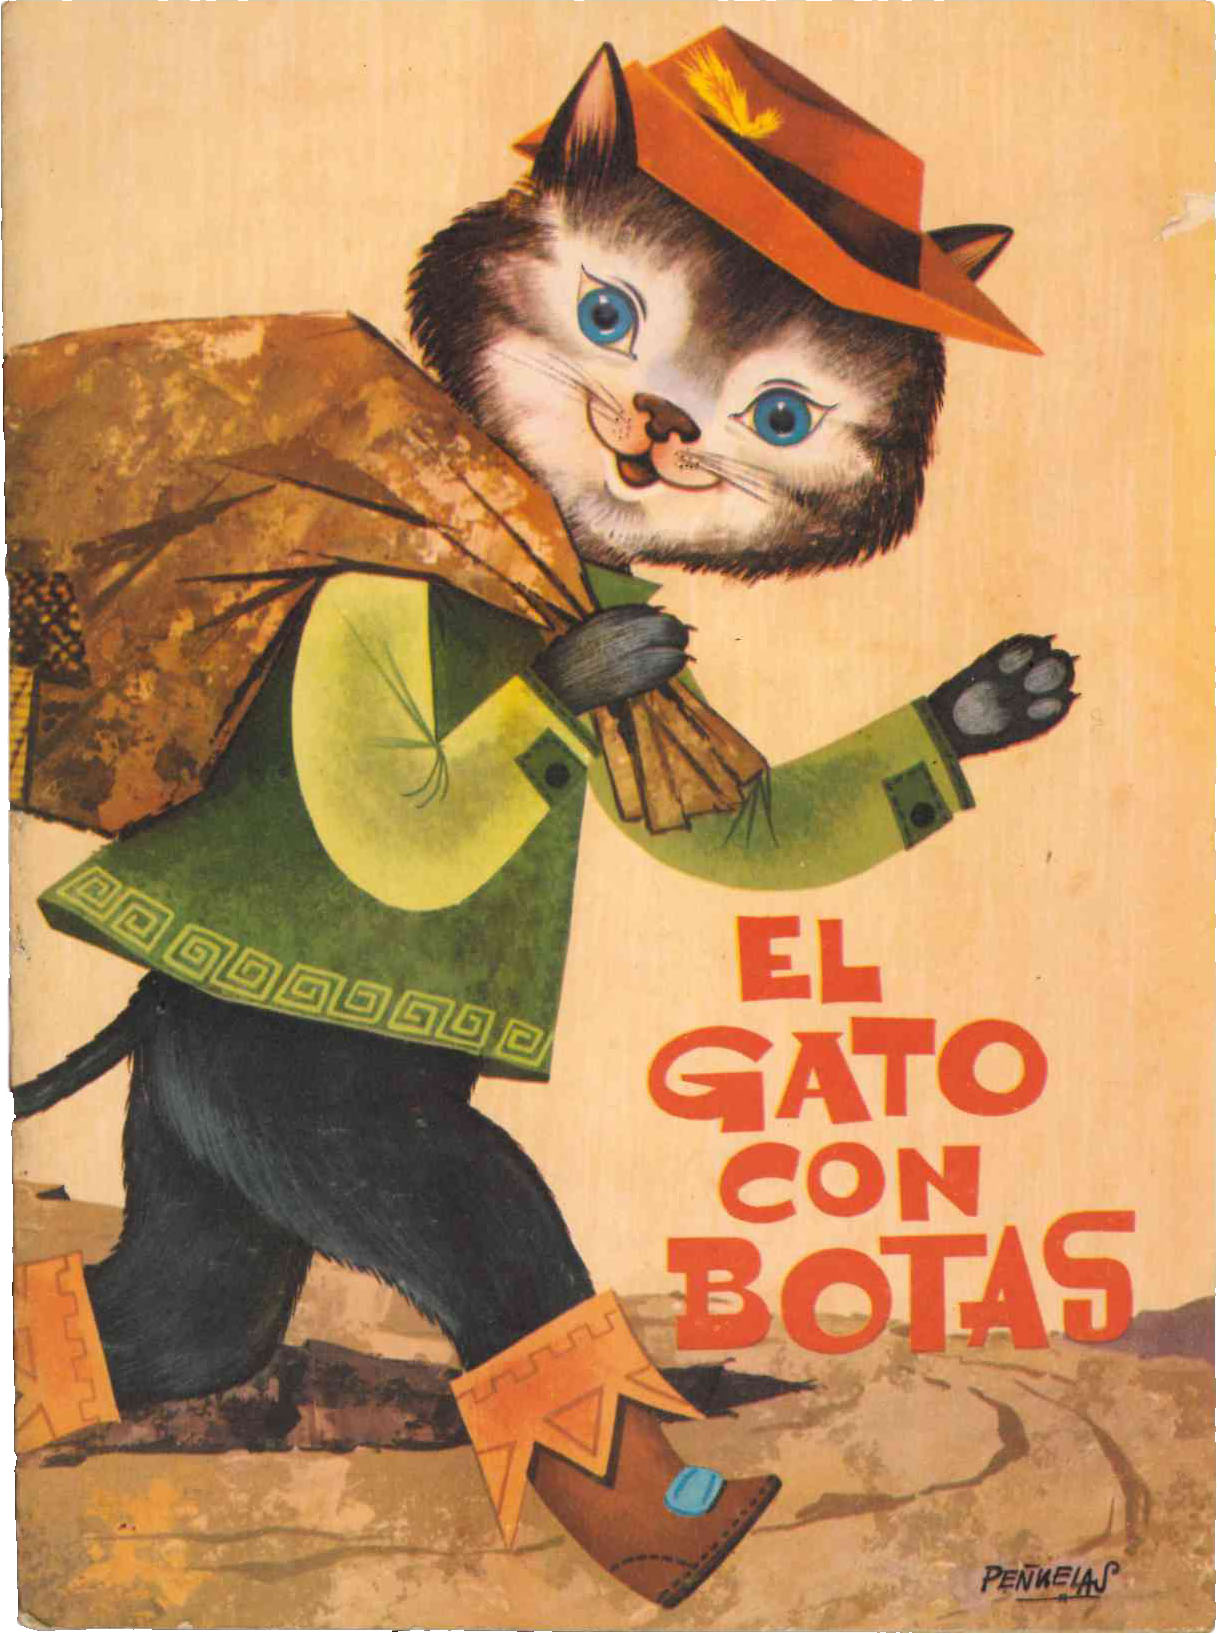 Cuentos El Gato con botas. Ferma 1963